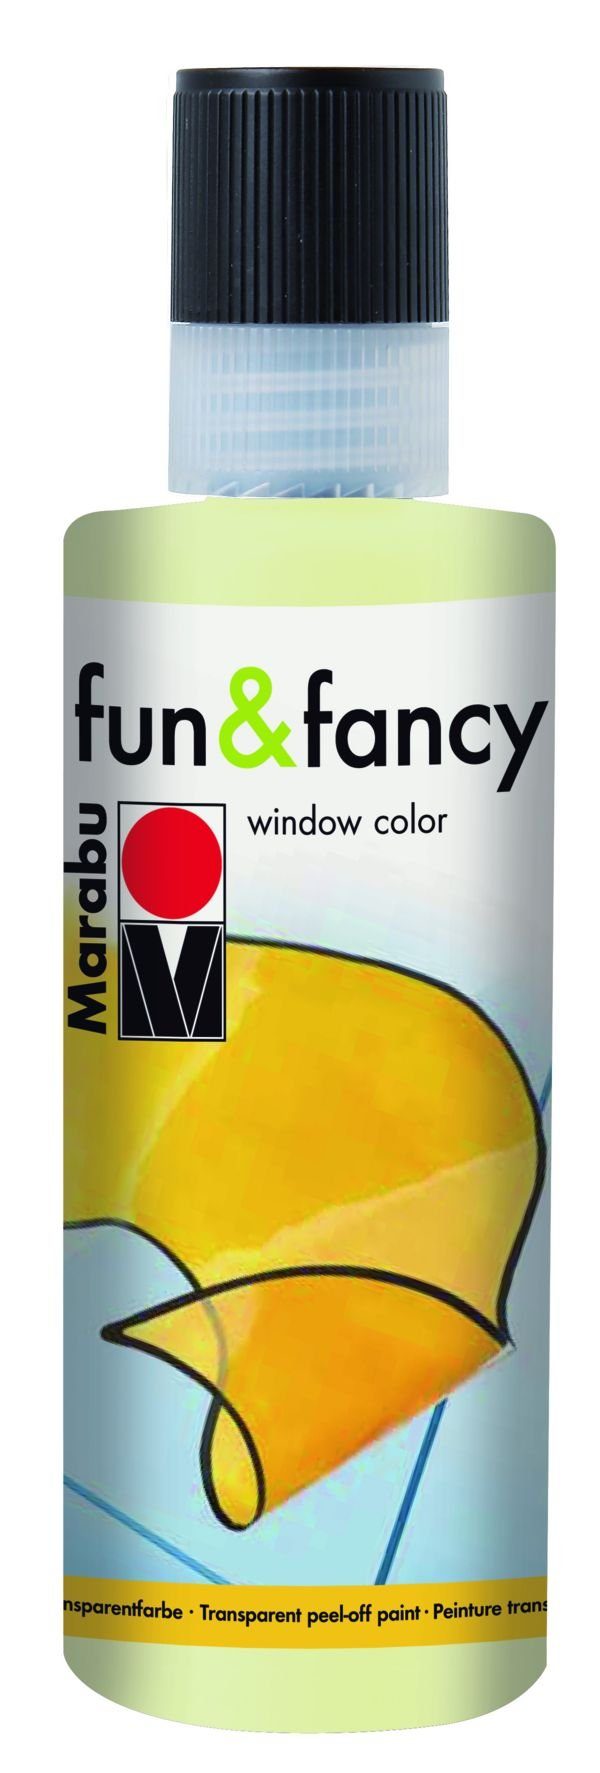 Marabu Kugelschreiber Window Color fun&fancy - Nachleucht-Gelb 872, 80 | Kugelschreiber